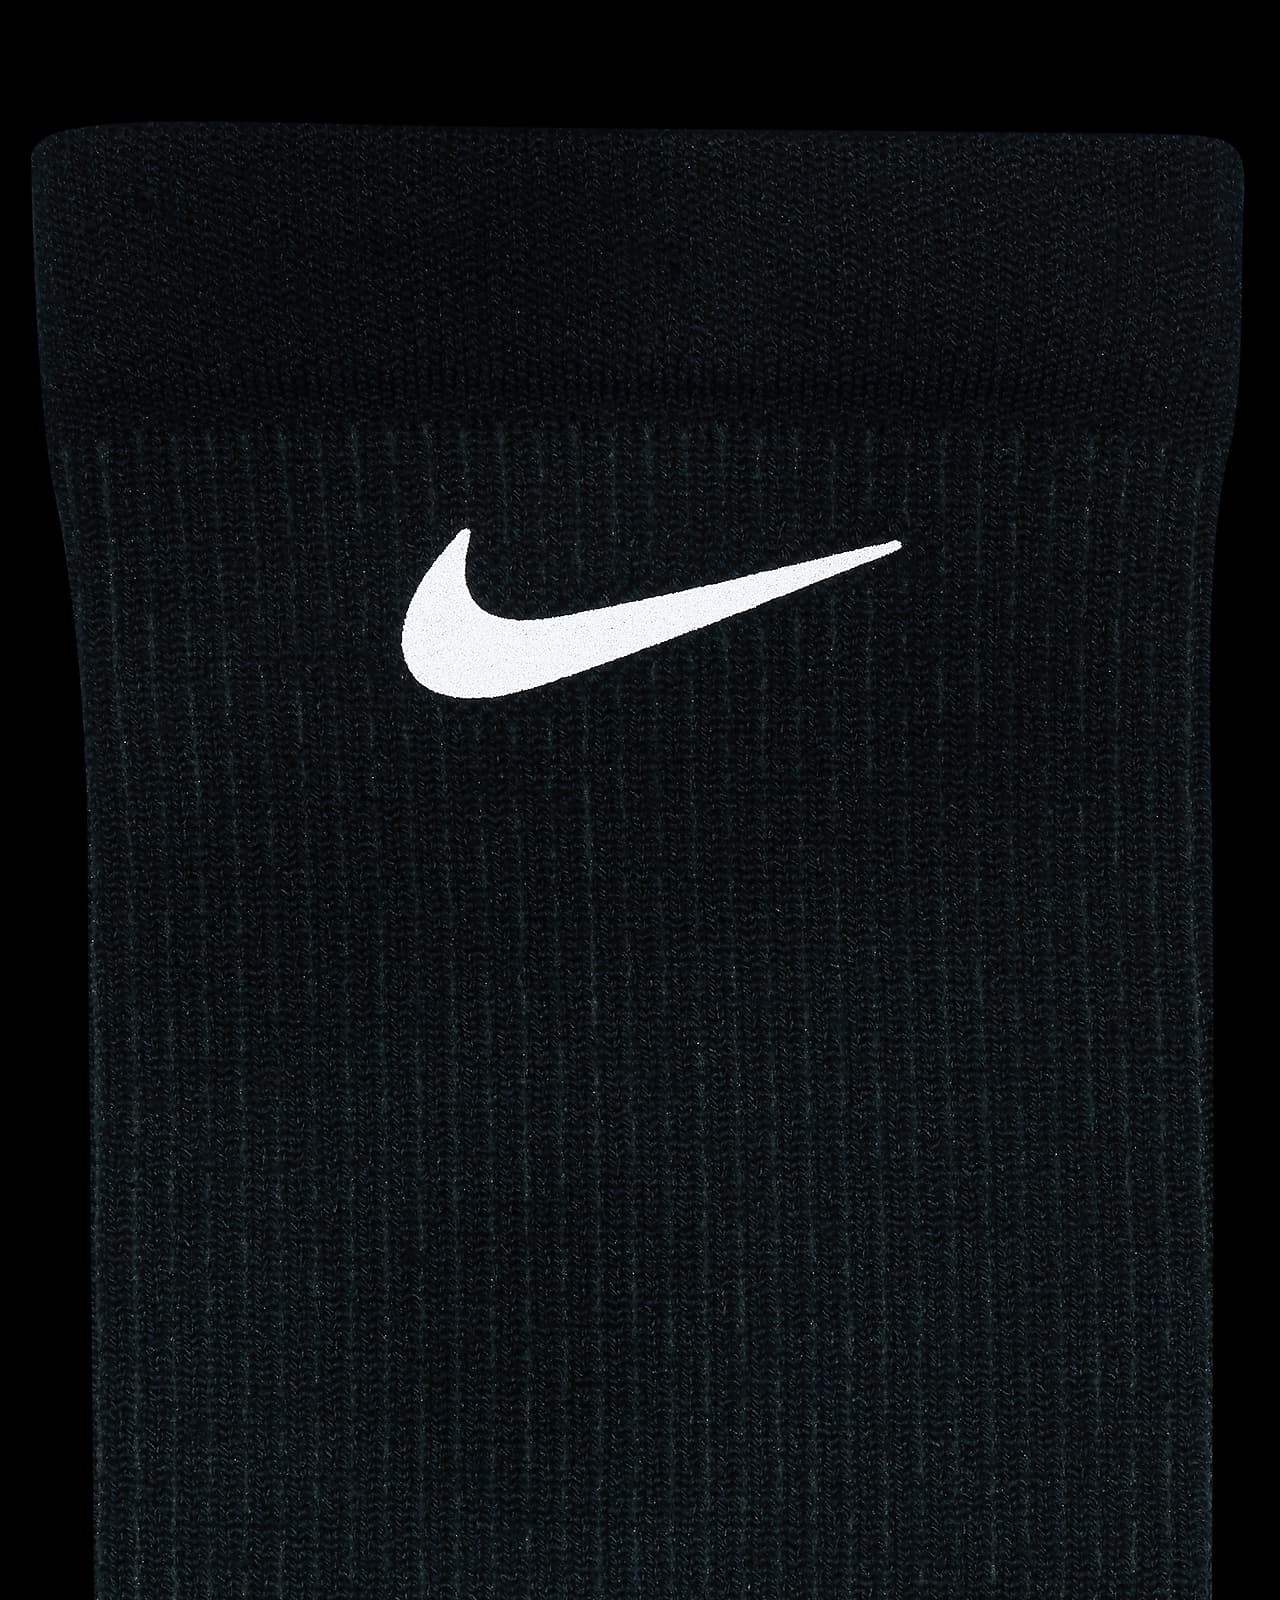 Nike Dri-FIT Trail Running Crew Socks.